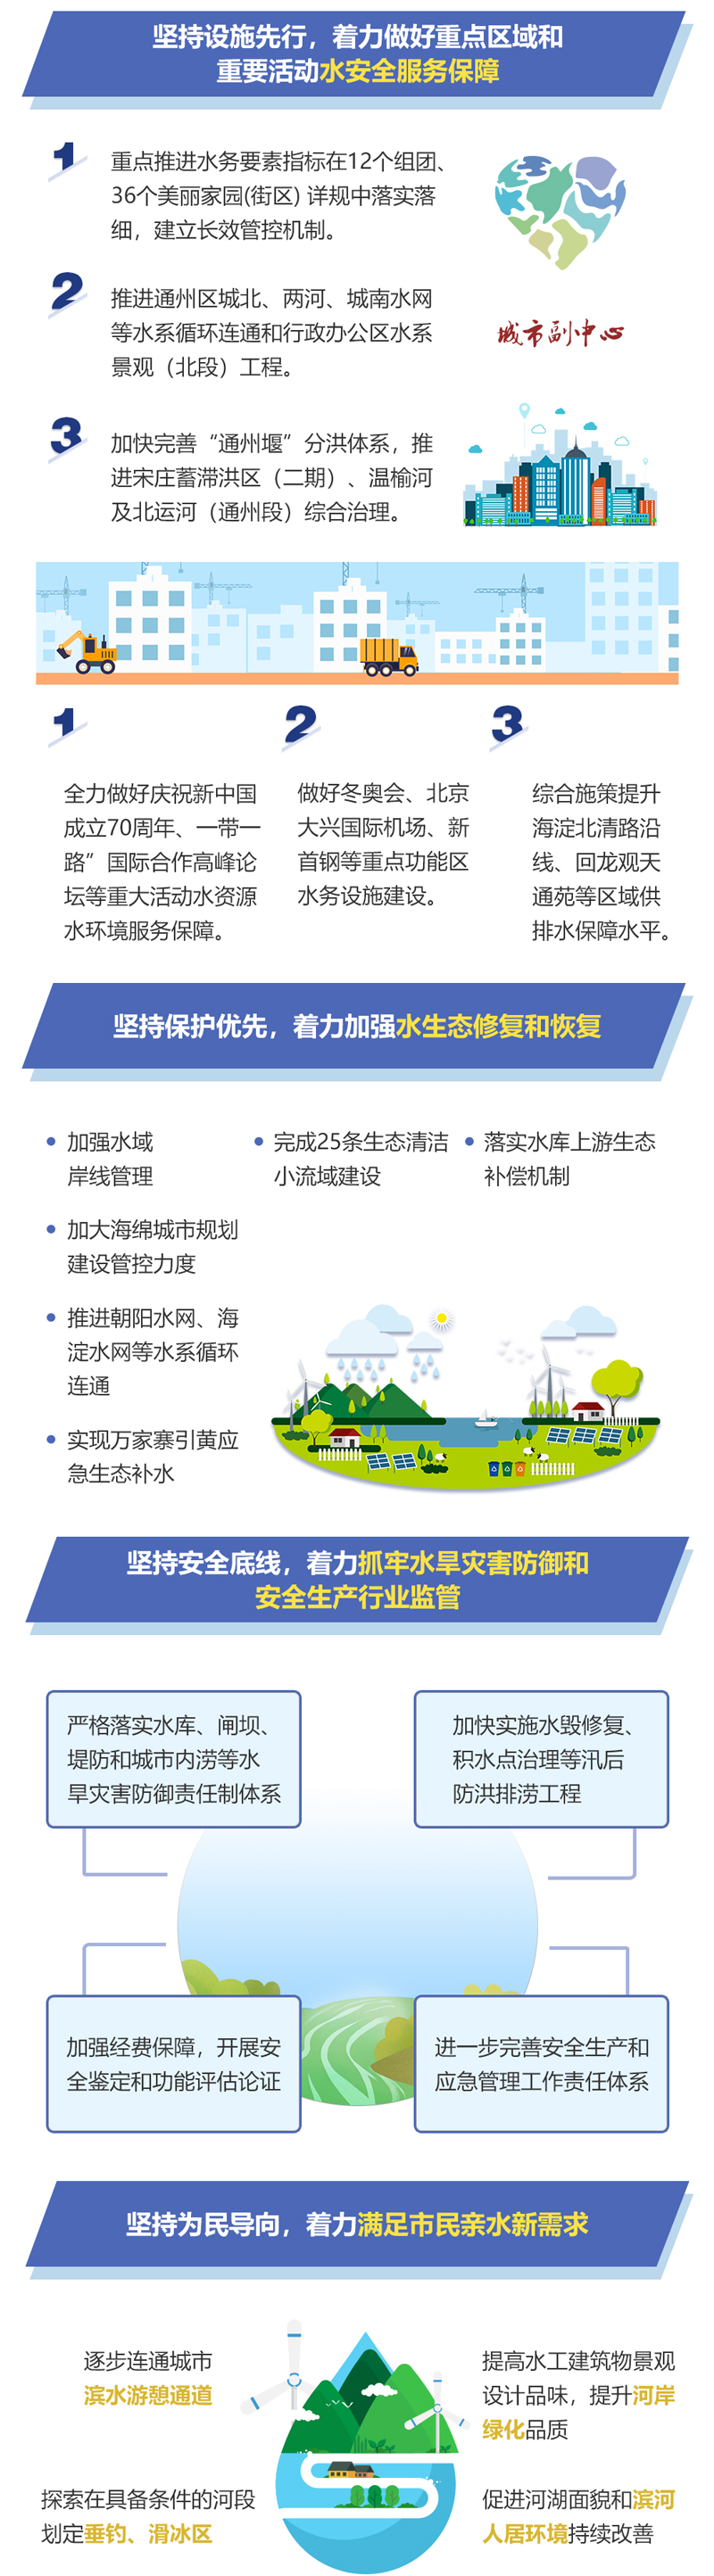 图解：凝心聚力开拓创新 展望2019年北京市水务发展